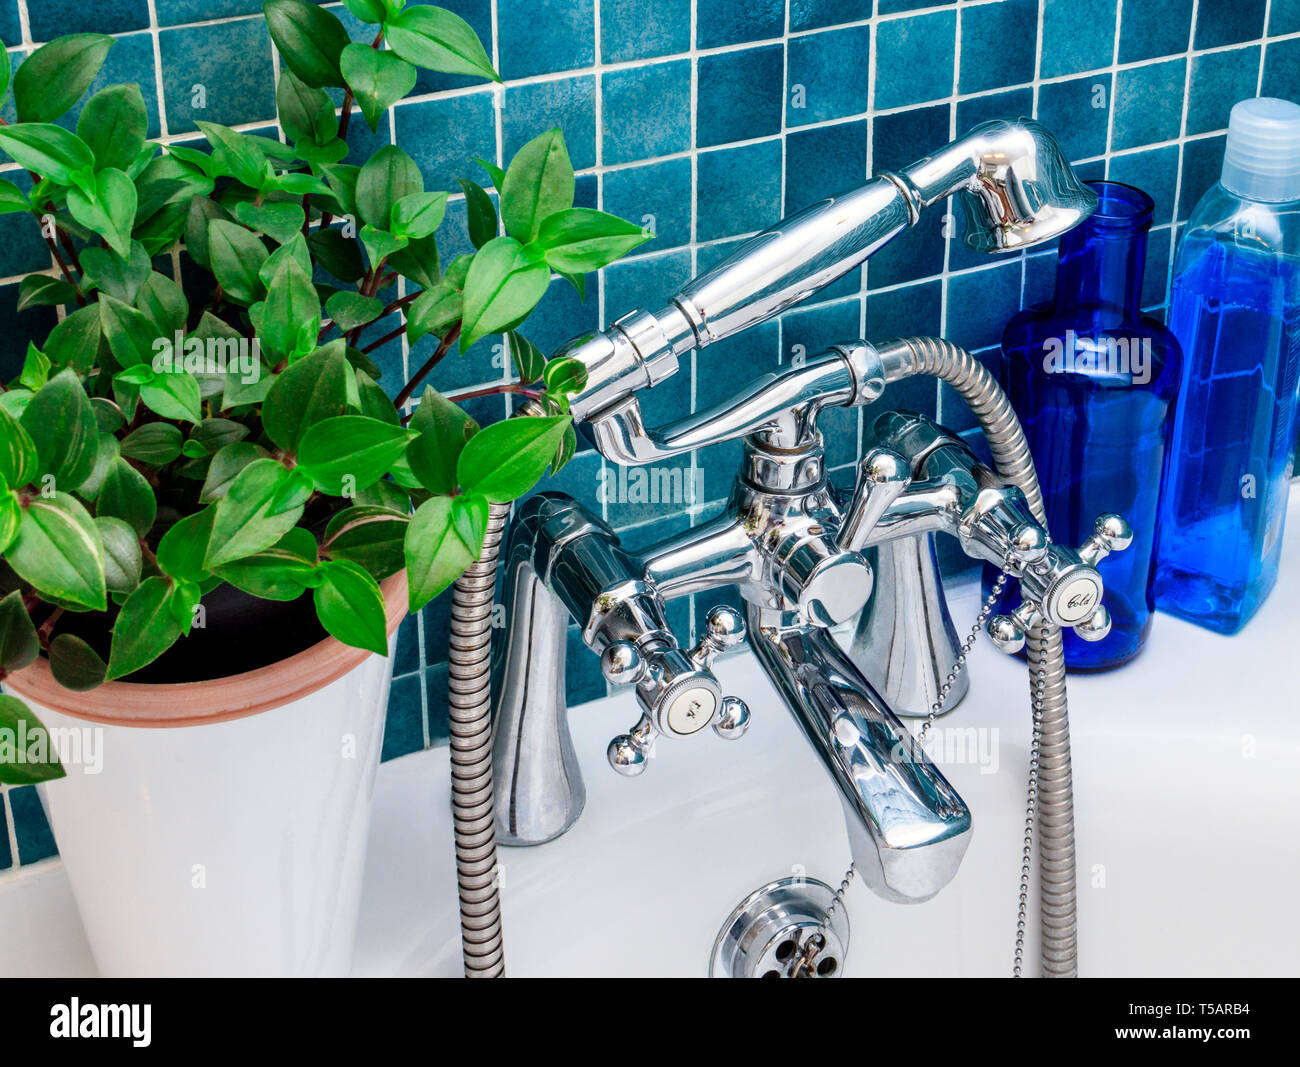 Cierre de grifos monomando cromada y cabezal de ducha de mano en un azul-verde baño revestido de azulejos con una planta de follaje y botellas de color azul Foto de stock